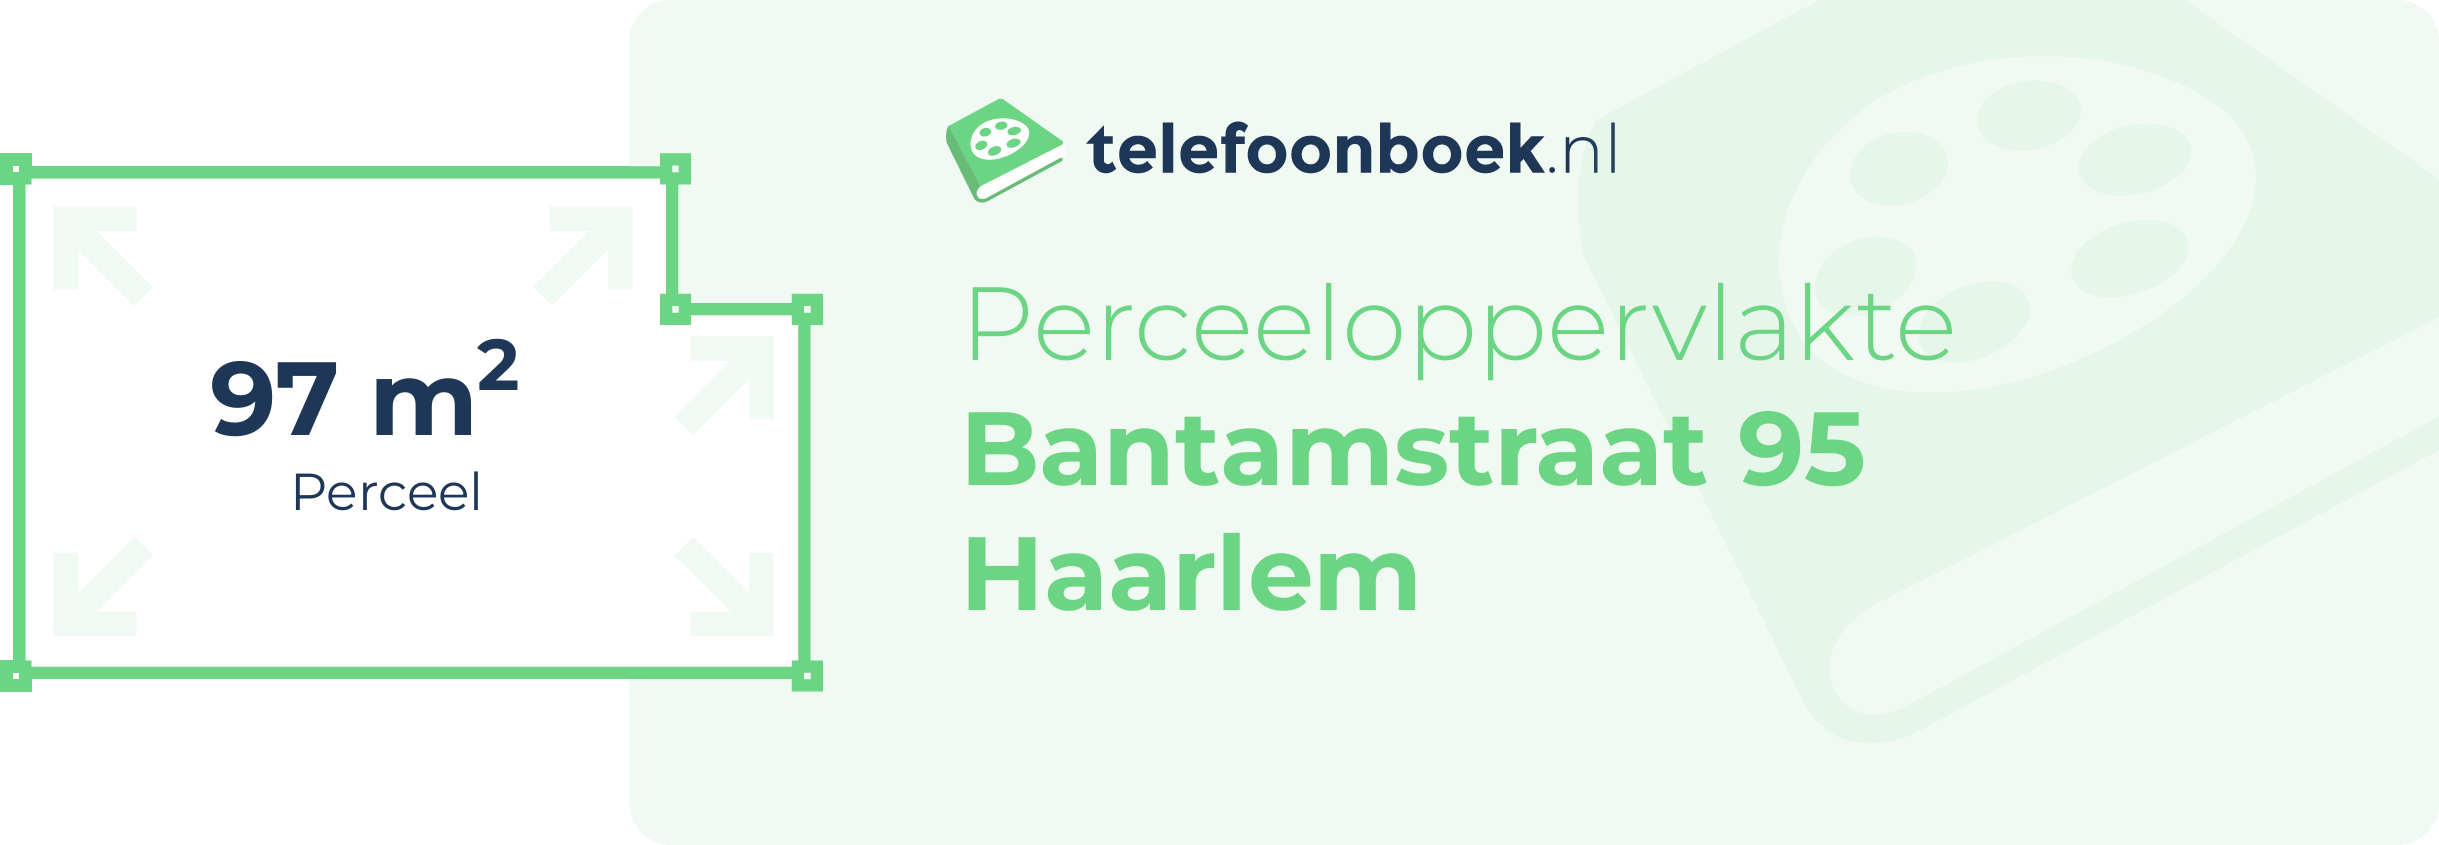 Perceeloppervlakte Bantamstraat 95 Haarlem